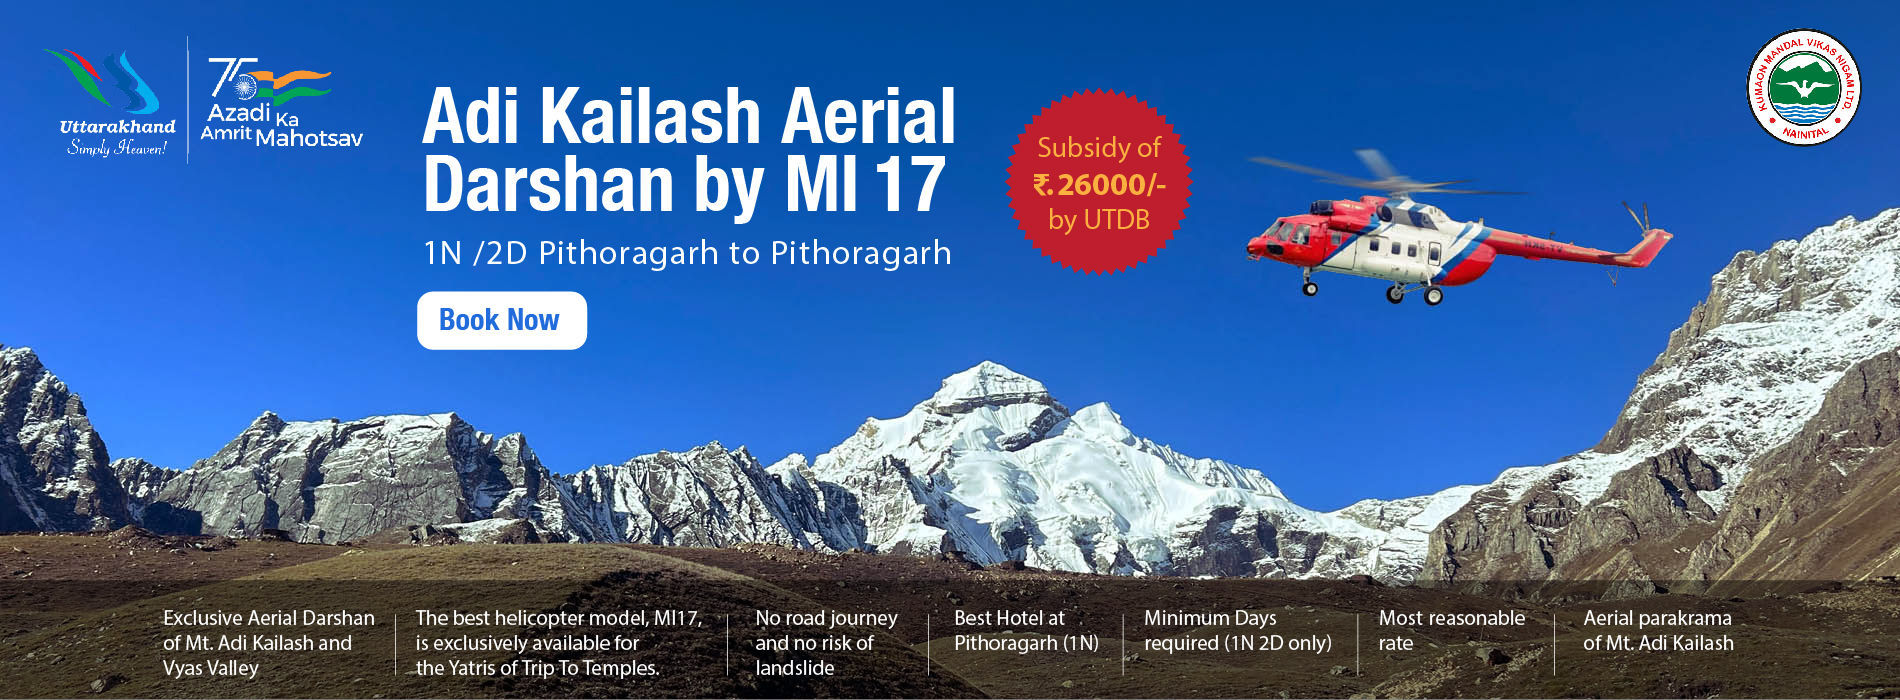 Adi Kailash Aerial Darshan by MI 17